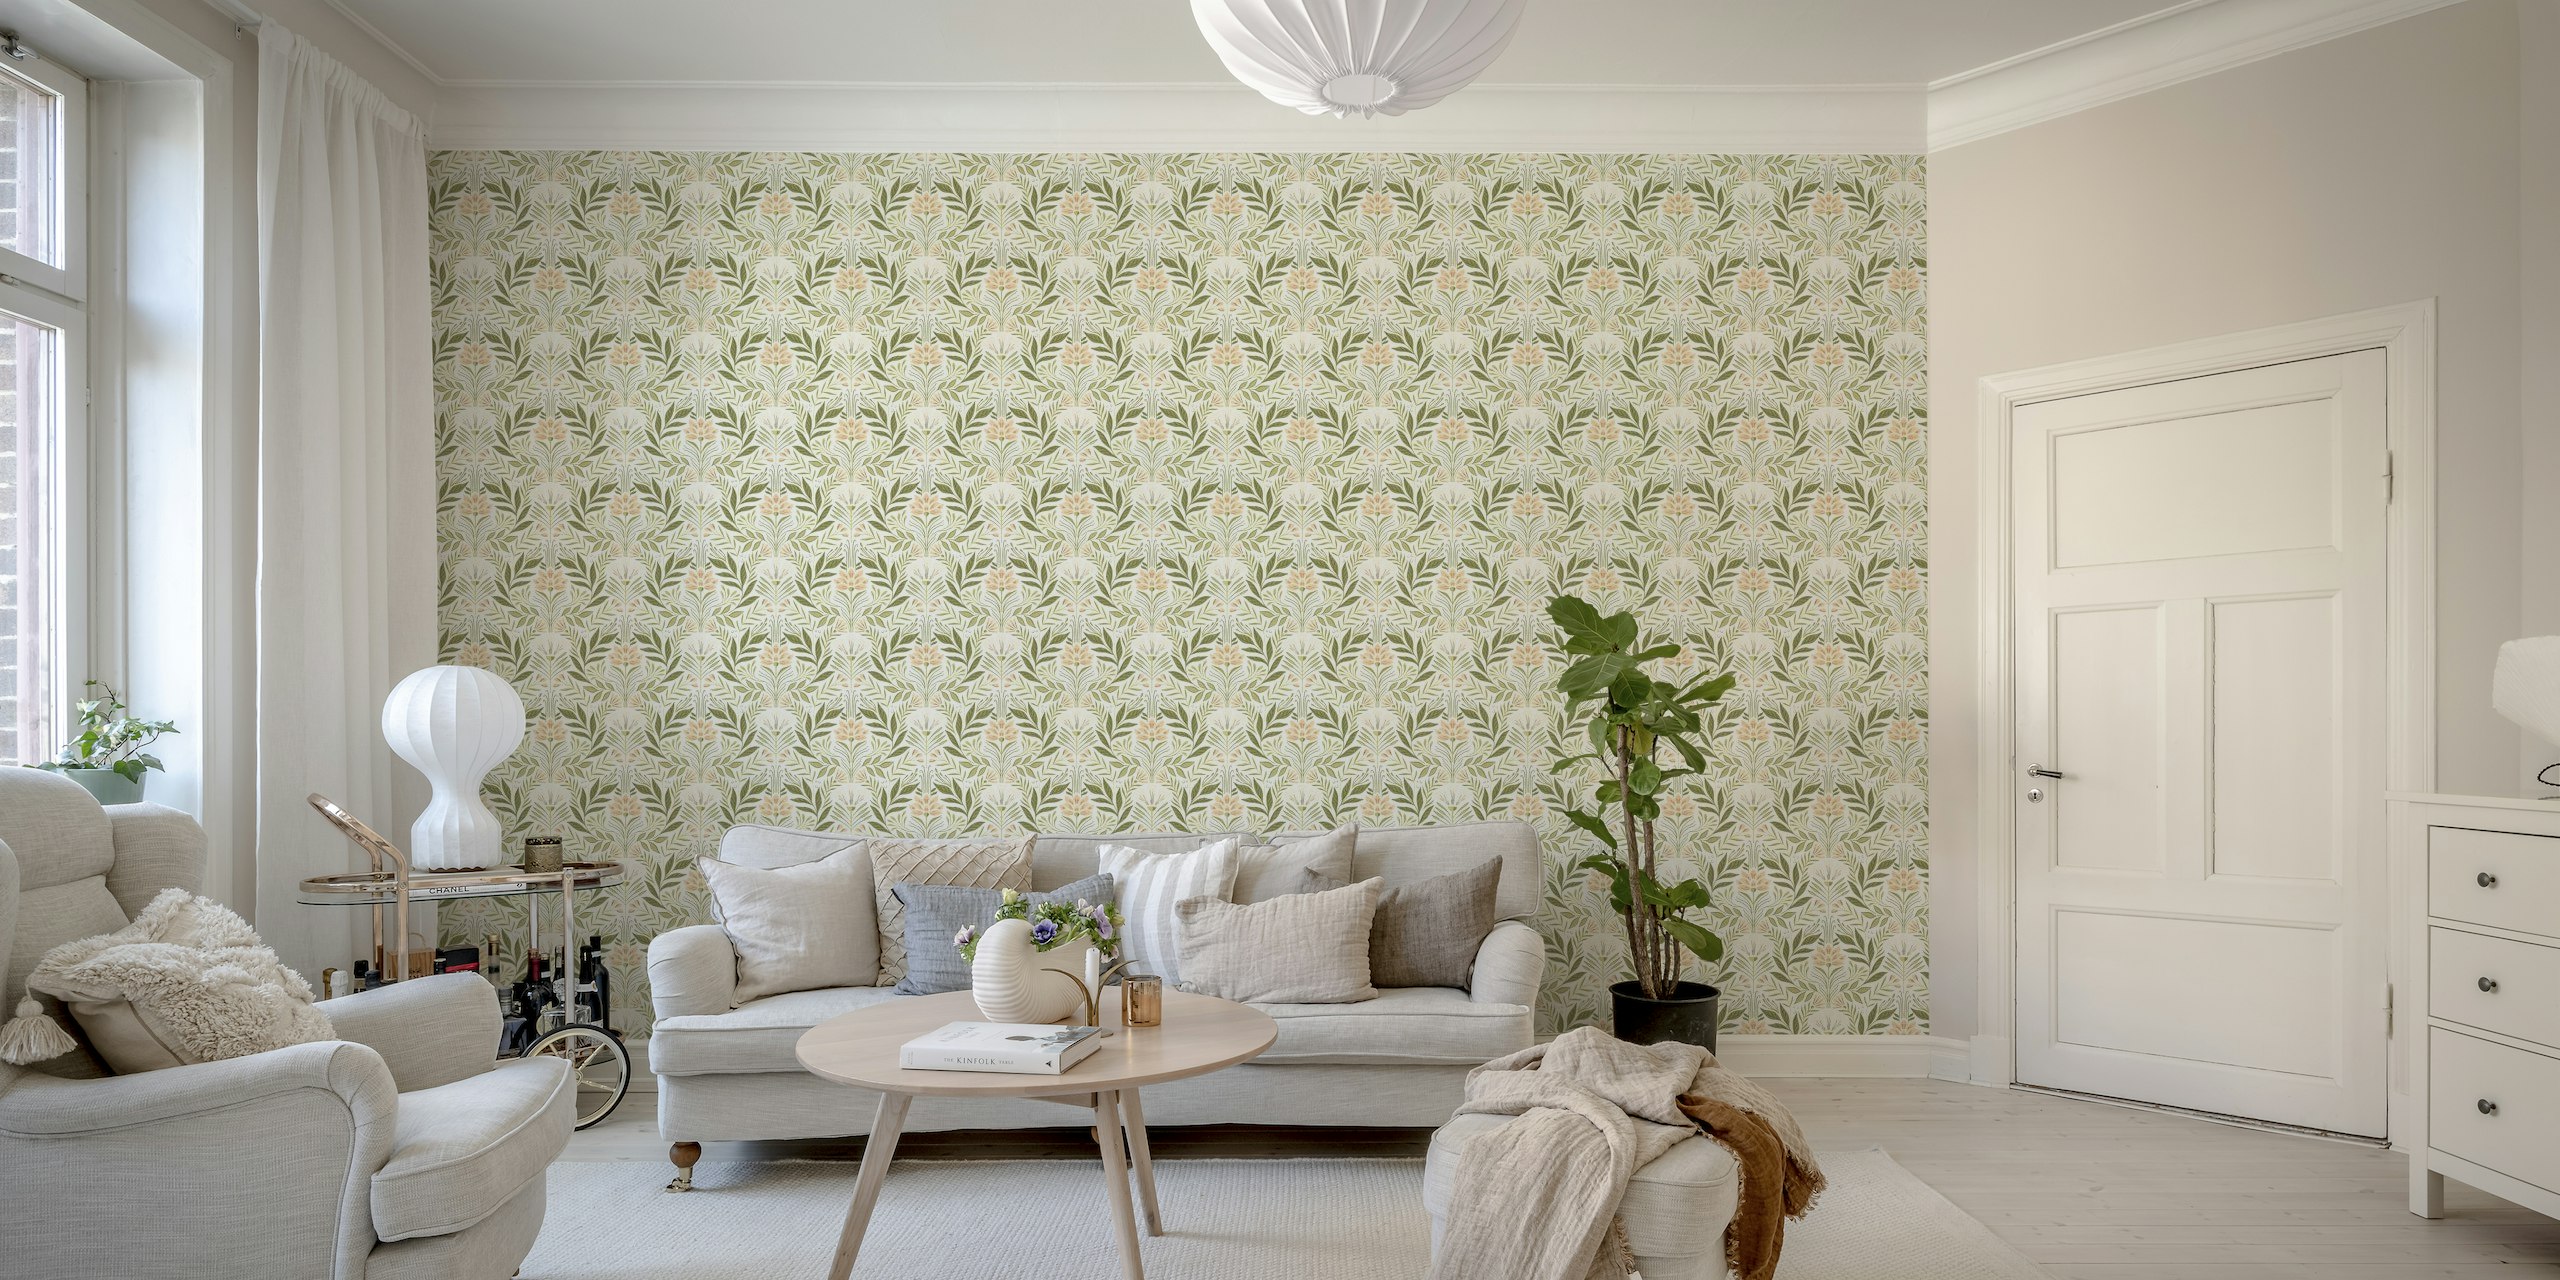 Fotomural vinílico de parede com padrão botânico simétrico em verde suave, pêssego e marfim